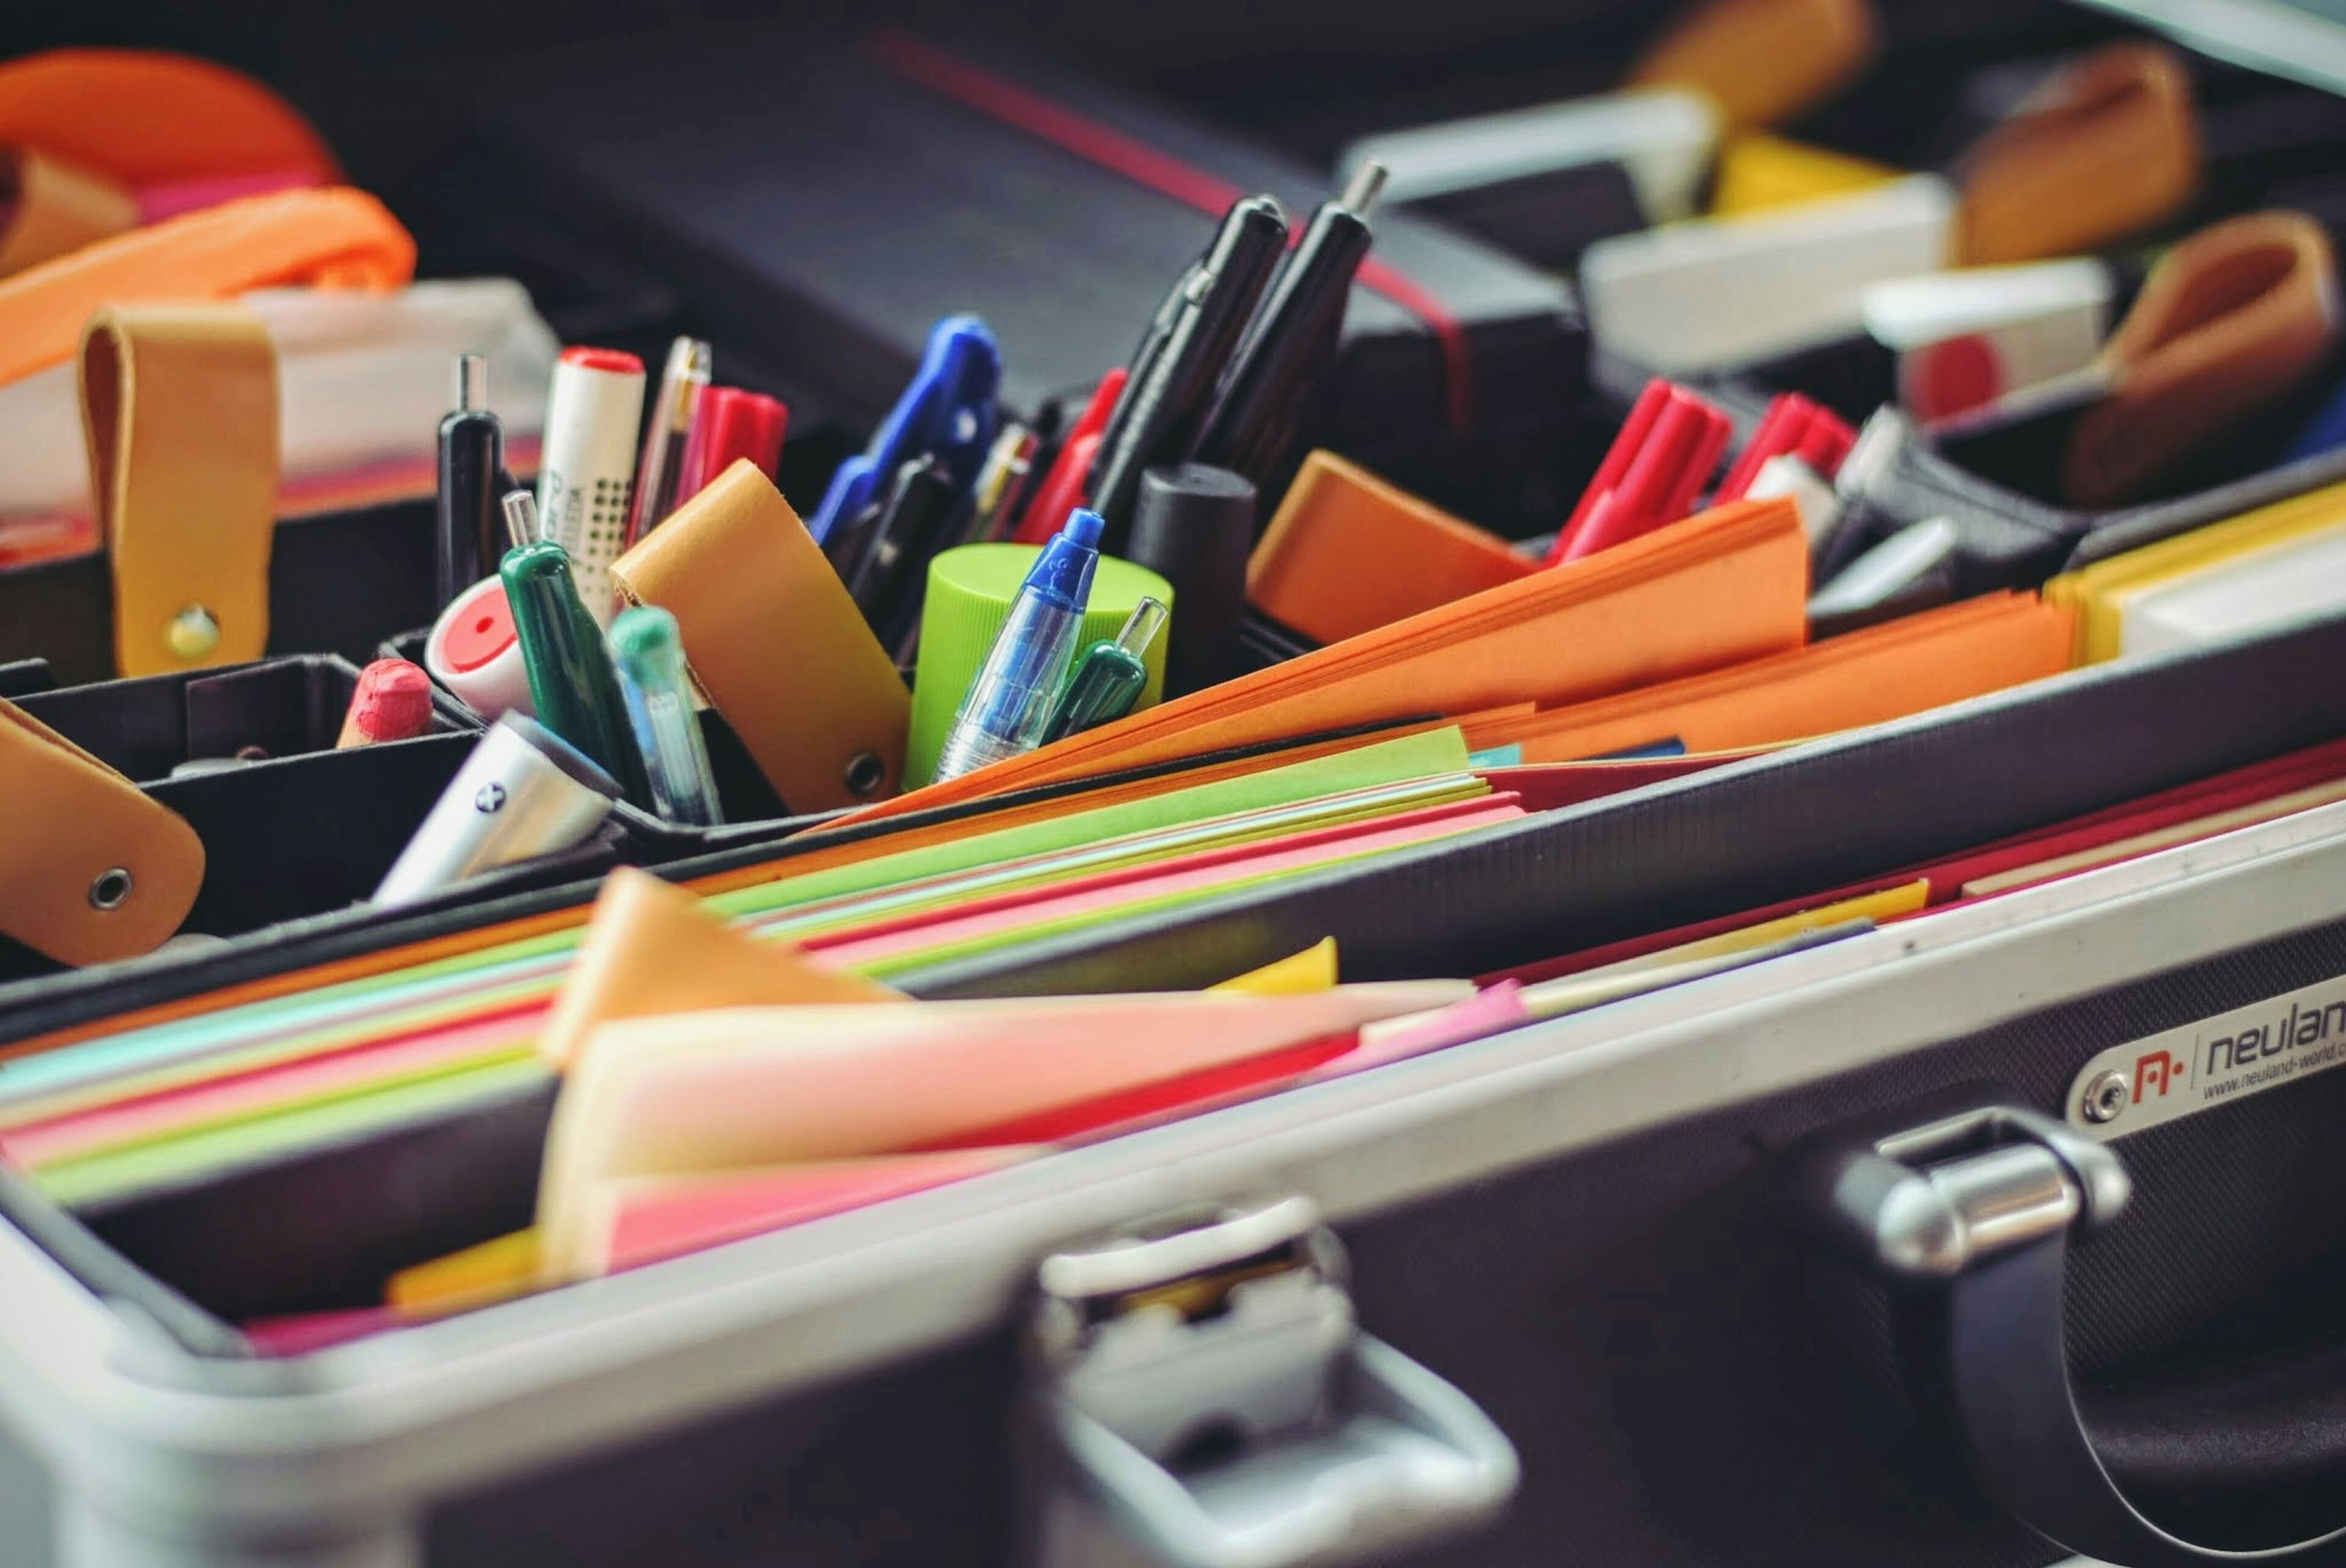 Variedad de artículos de papelería ordenados en un maletín portátil, incluyendo bolígrafos, marcadores y carpetas de colores.